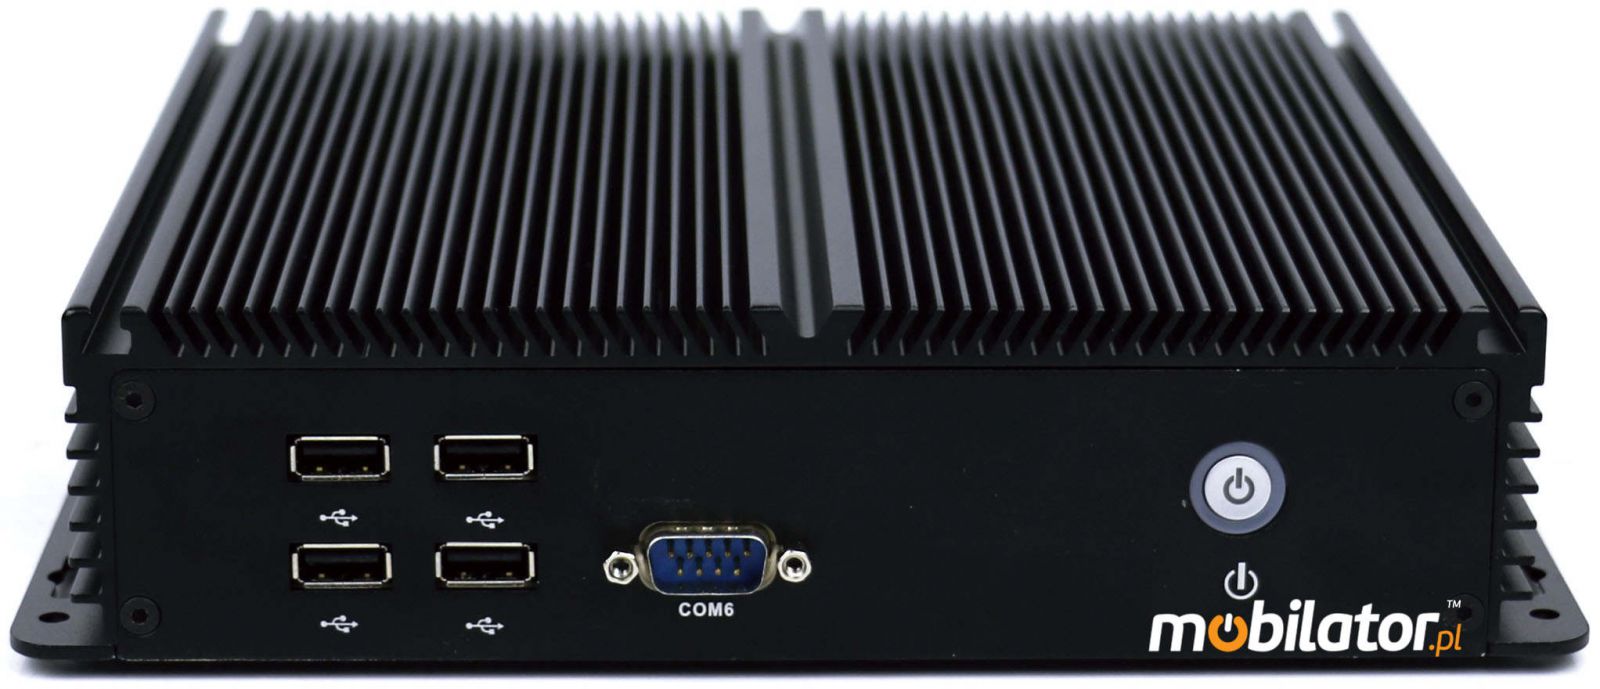 IBOX-205 Komputer przemysłowy  dla zastosowań magazynowych z modułem WiFi 3G 4G 6x COM